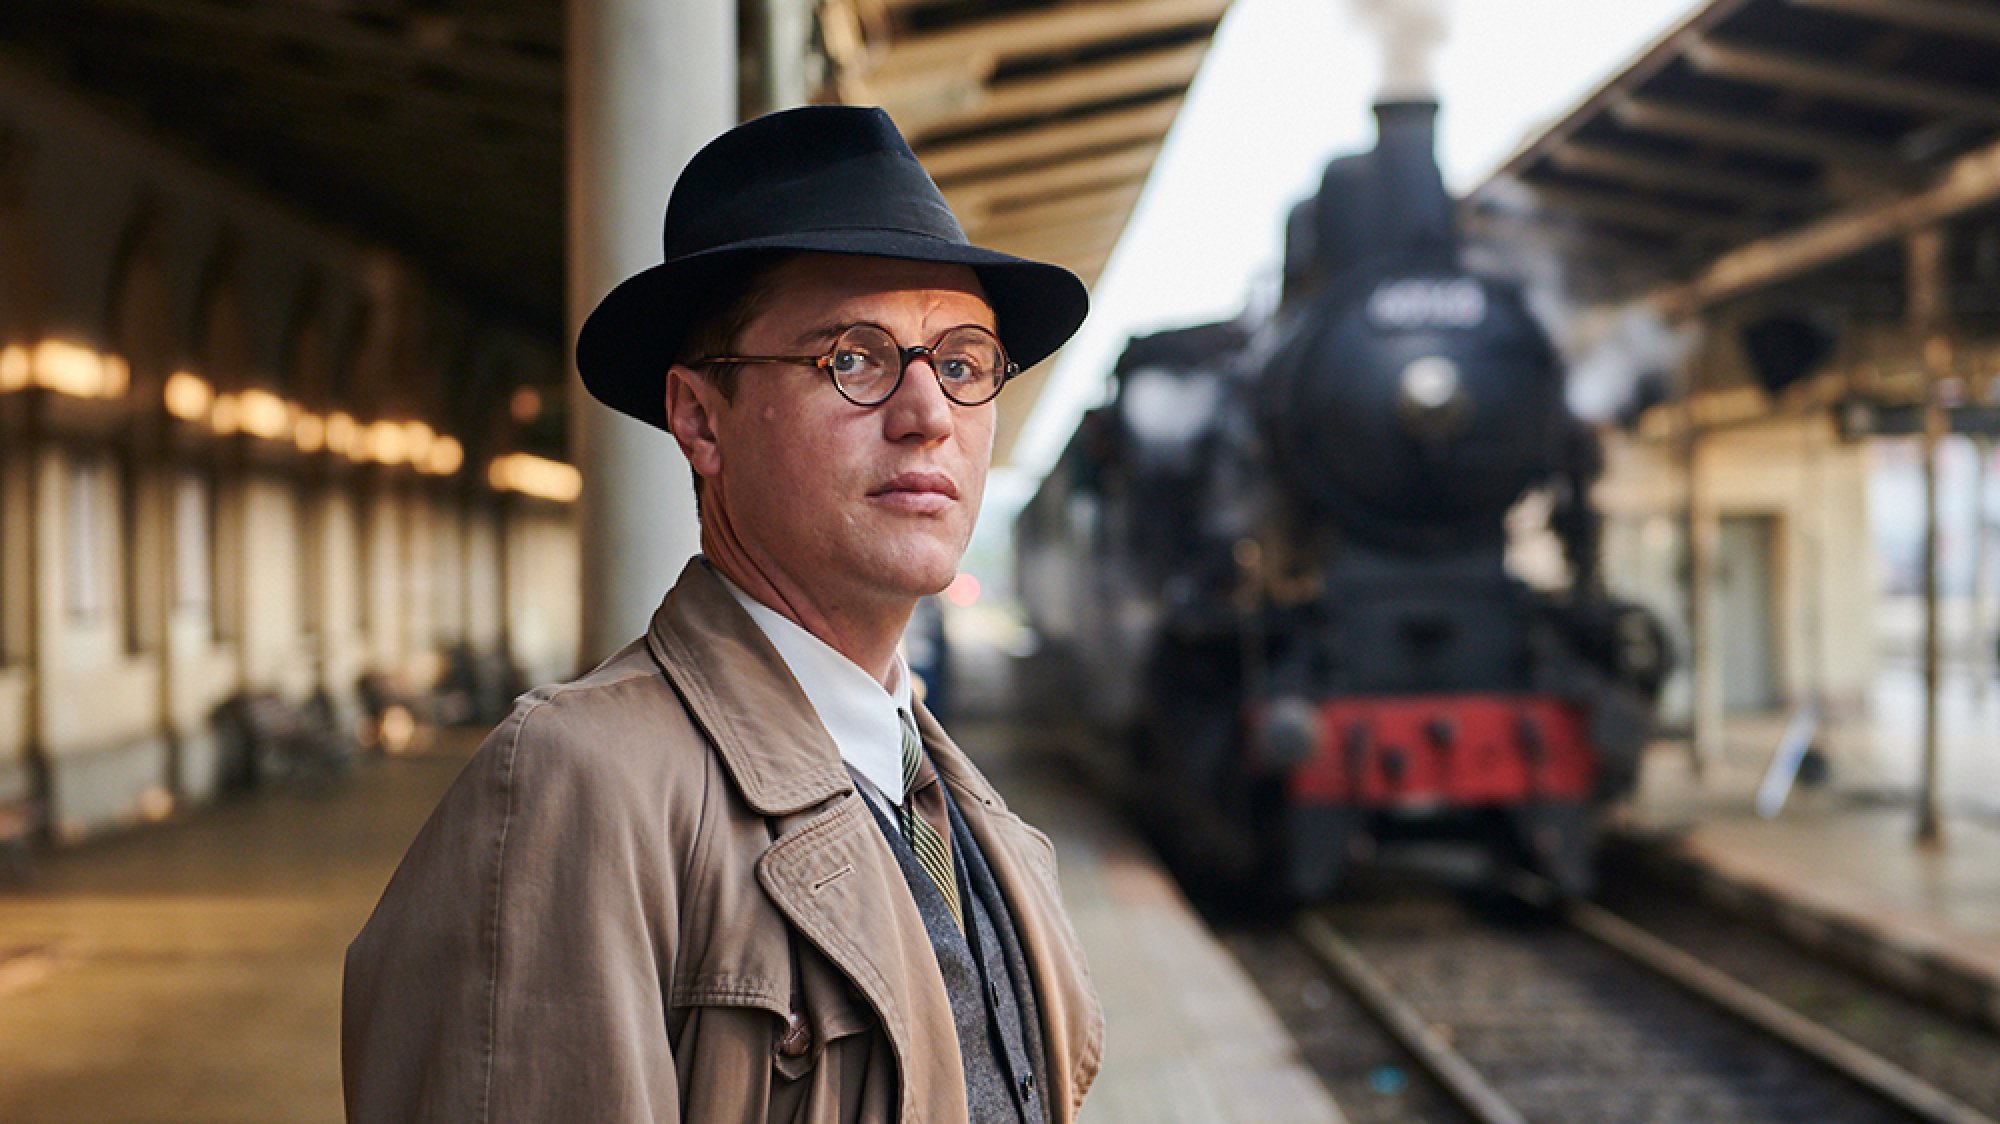 Un jeune homme portant des lunettes se tient sur un quai de train avec un train à vapeur en arrière-plan.